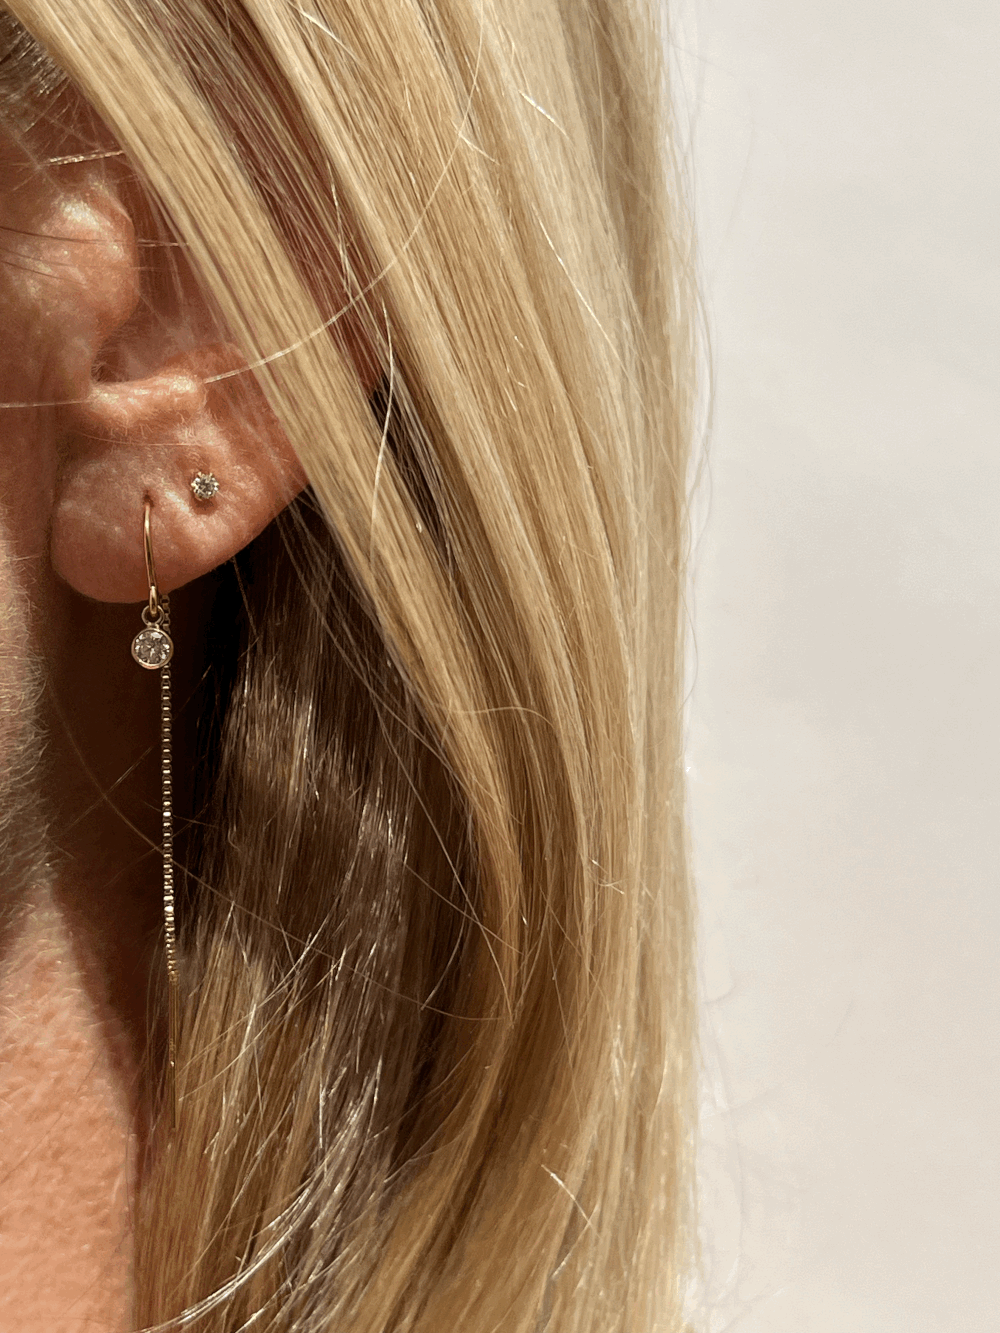 14K Diamond Bezel Threader Earrings